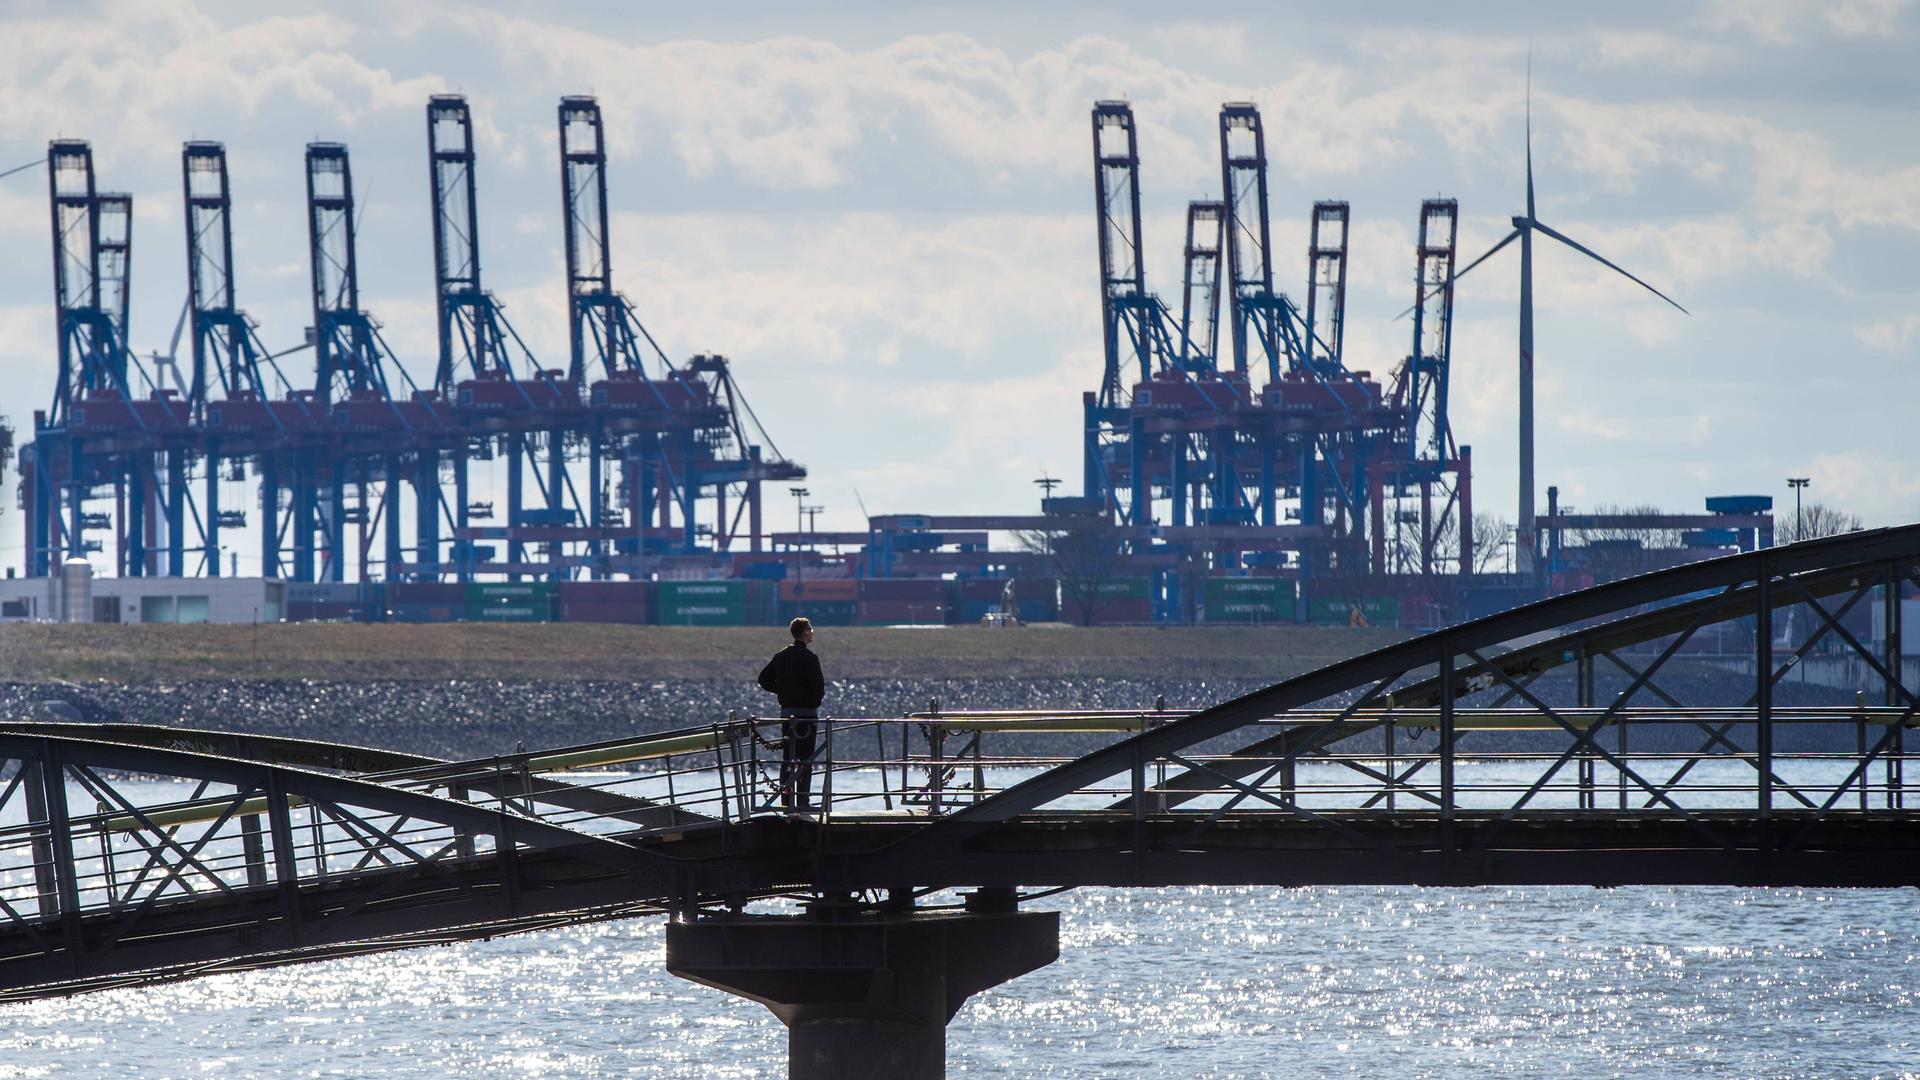 Blick auf den Hamburger Hafen, im Vordergrund steht eine Person auf einer Brücke, die zum Hafen schaut